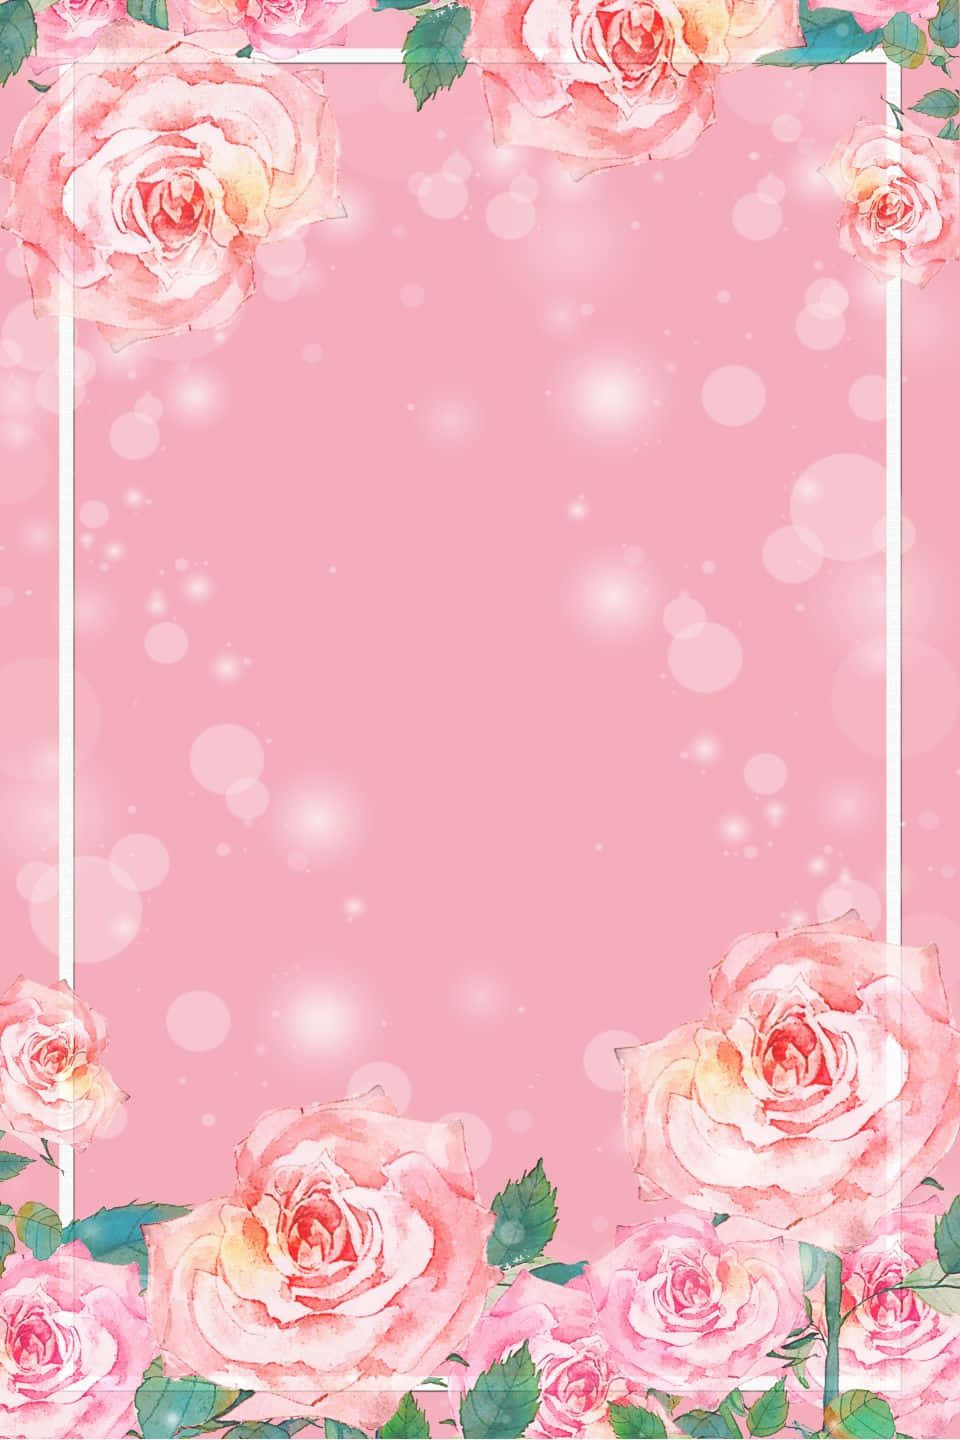 Unbellissimo Fiore Rosa Su Uno Sfondo Celeste